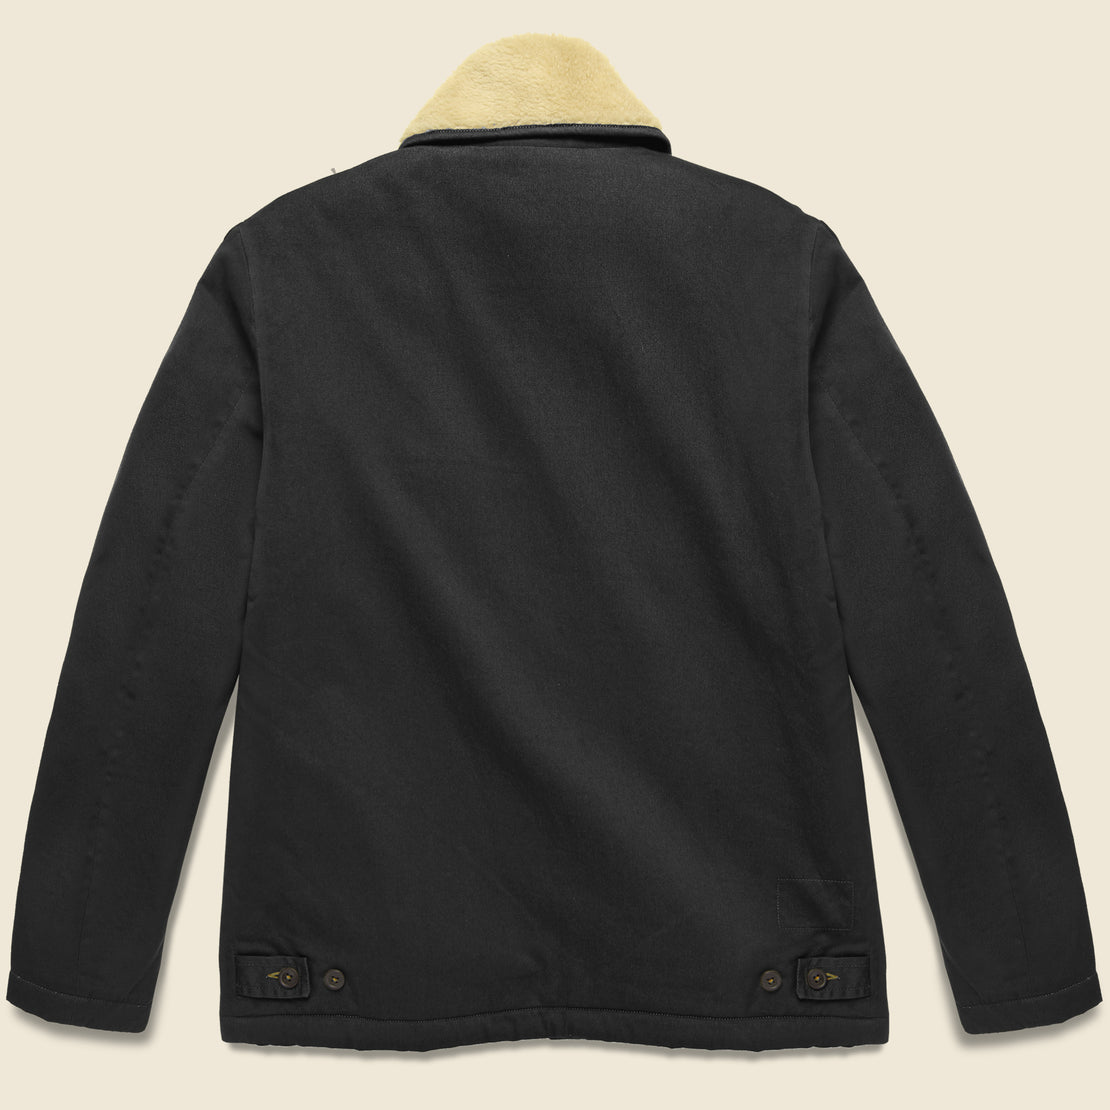 N1 Jacket - Black